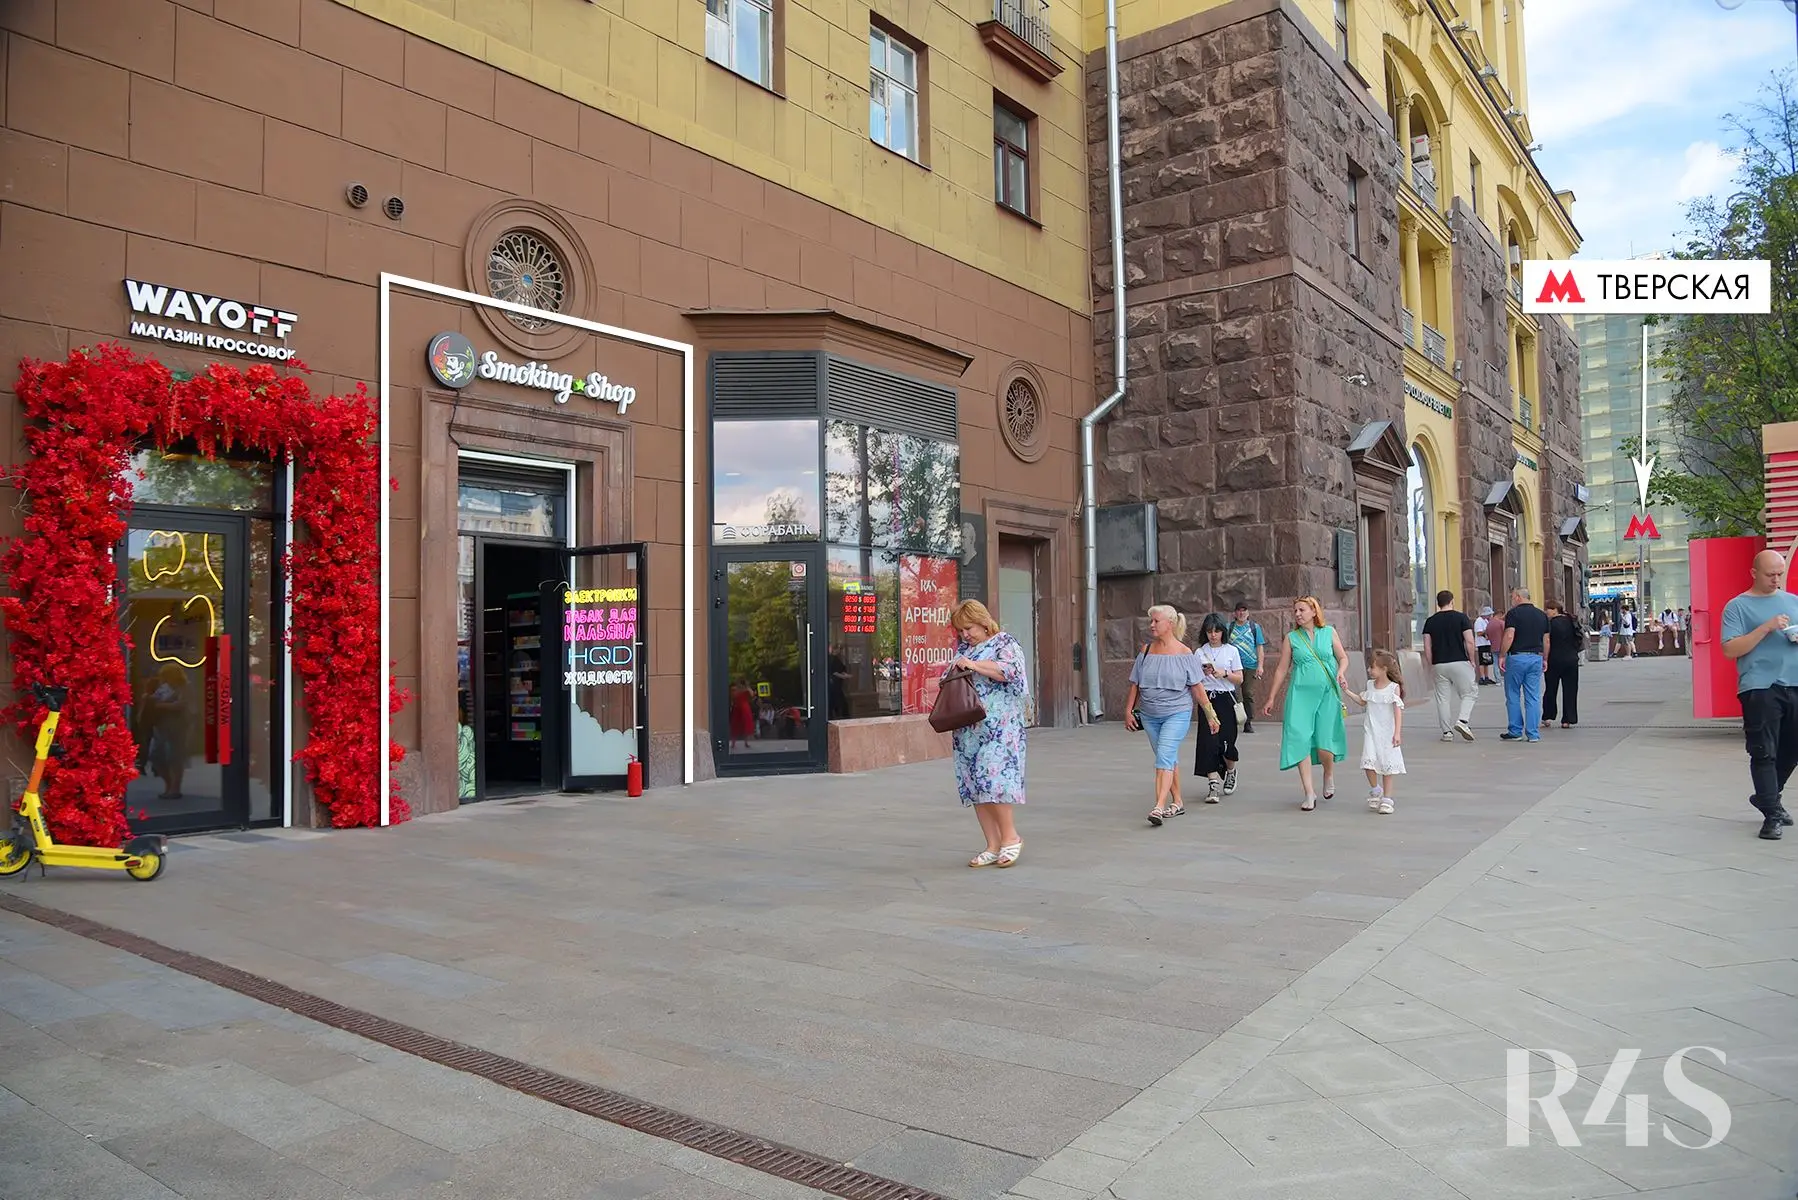 Продажа готового арендного бизнеса площадью 14.9 м2 в Москве: Тверская, 19 R4S | Realty4Sale